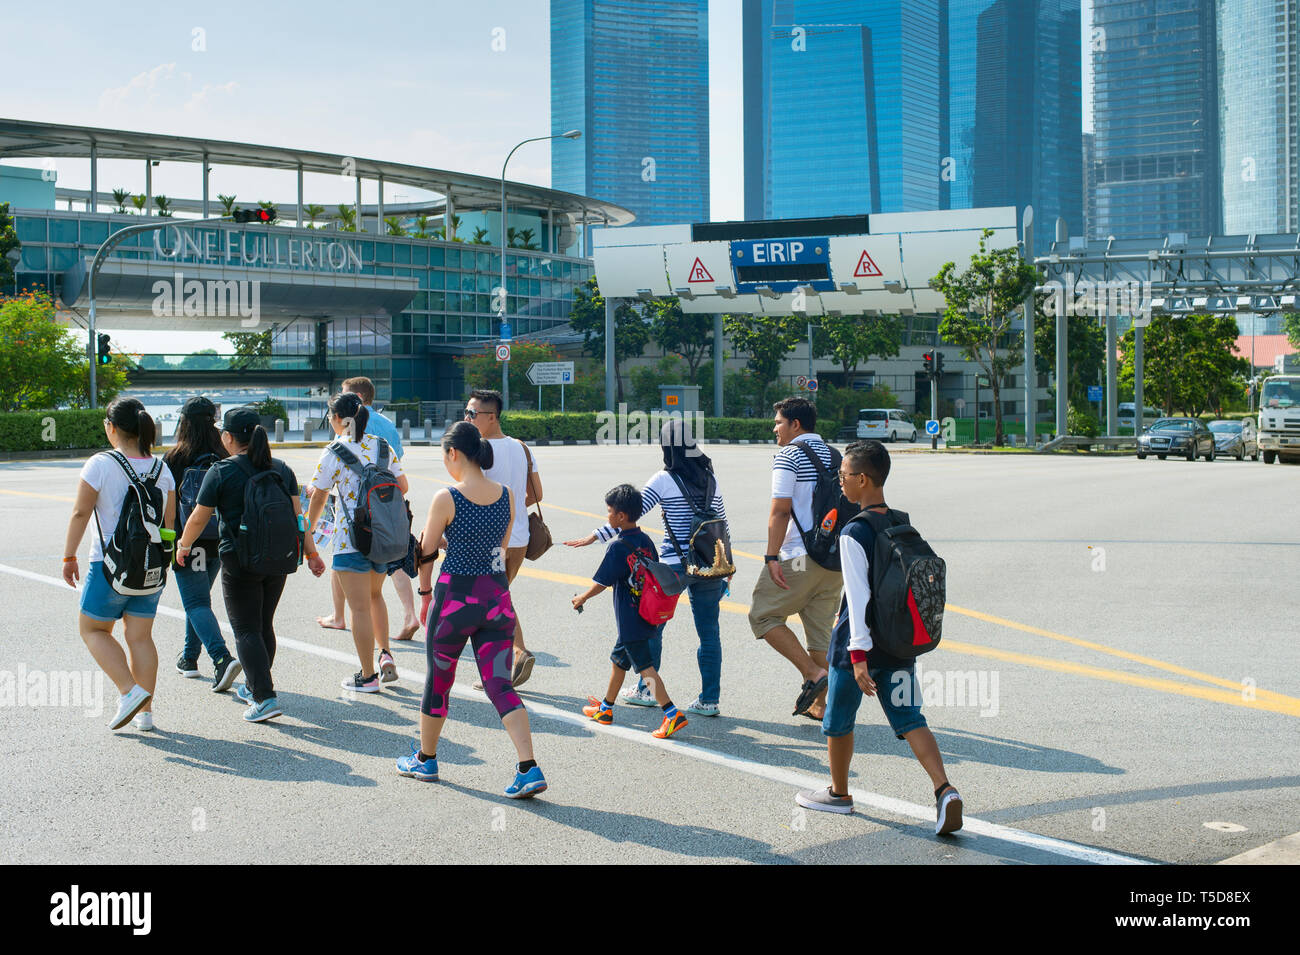 Singapur - Januar 15, 2017: Überqueren der Straße in Singapur. Singapur ist ein globaler Handel, Finanzen und Transport Hub Stockfoto